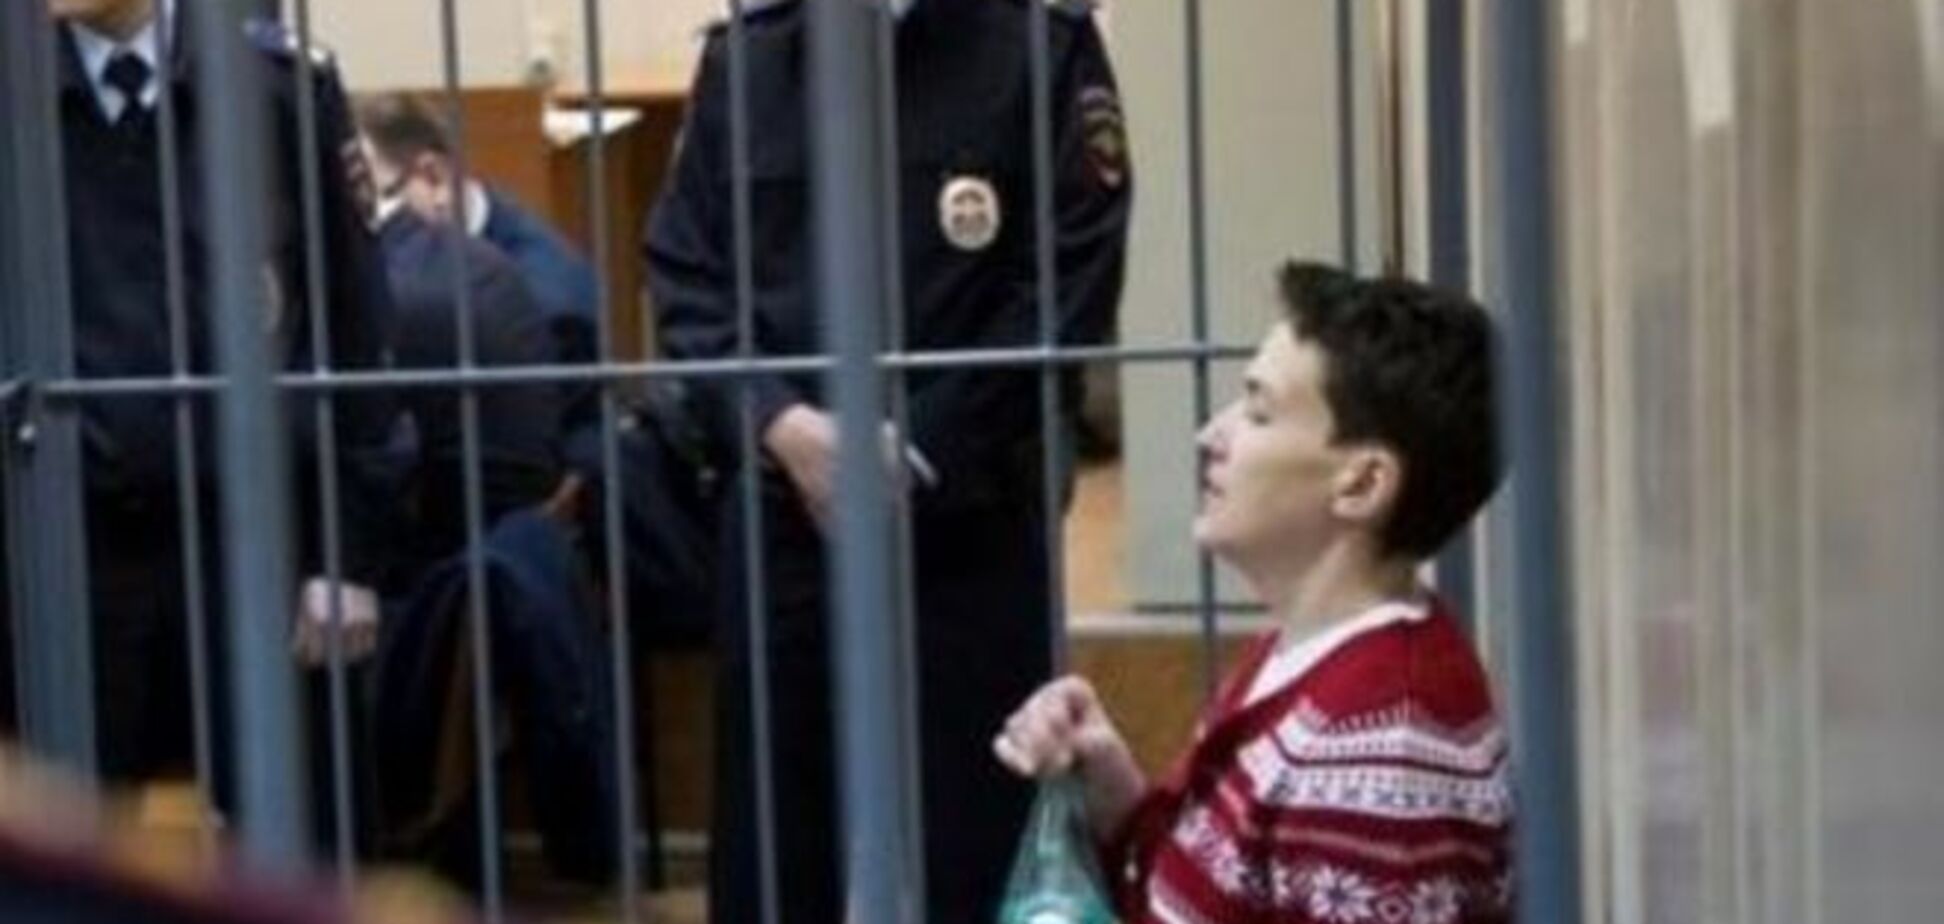 Савченко вызвали 'скорую помощь' прямо в зал суда - адвокат